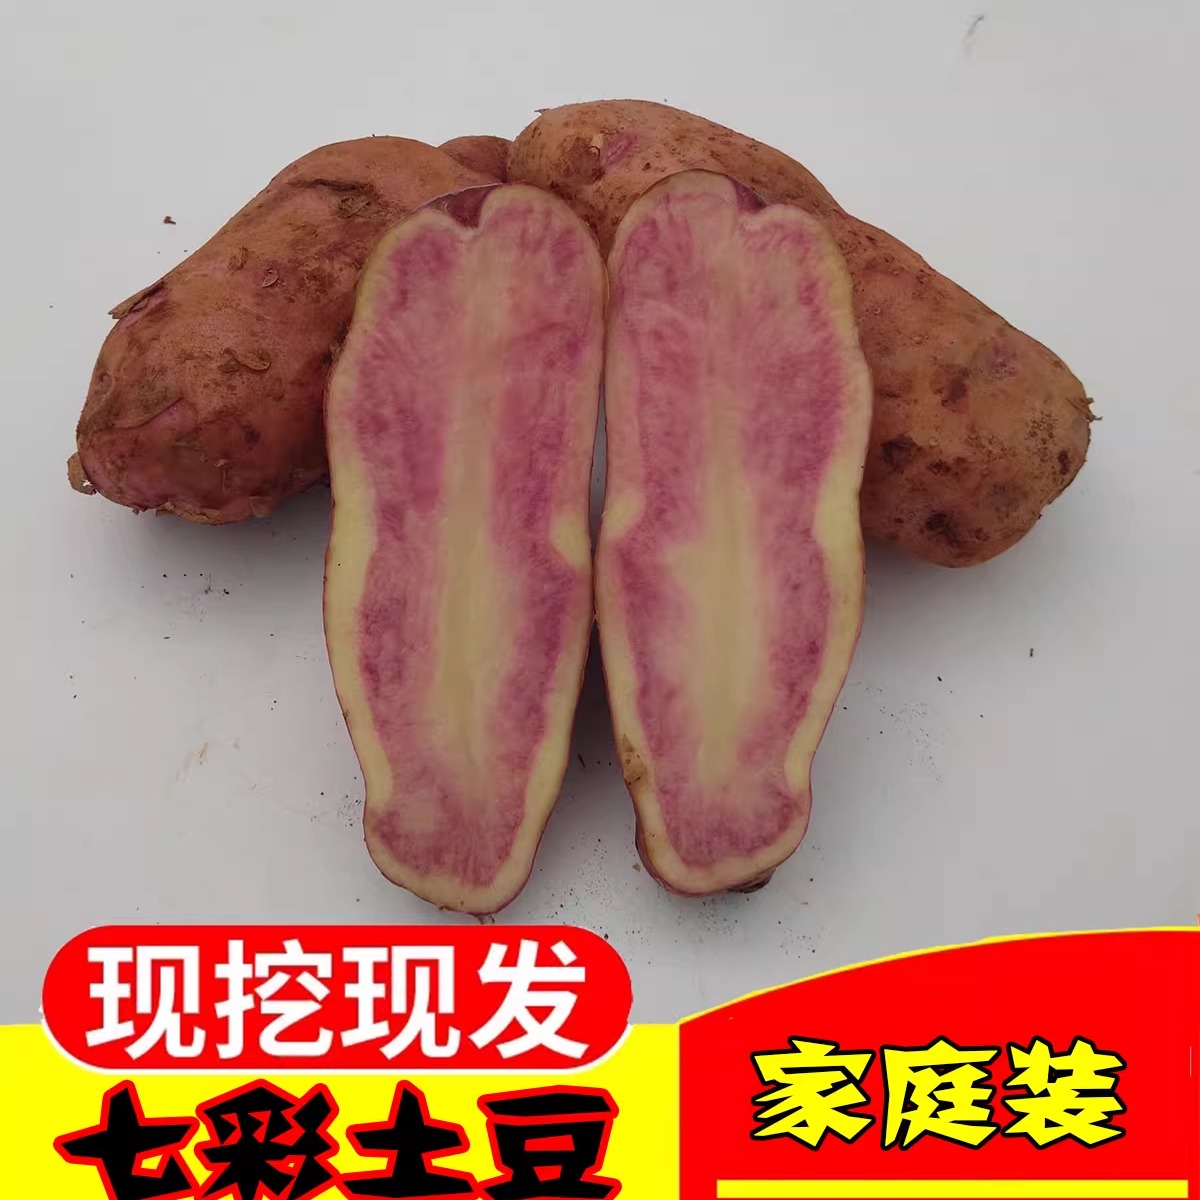 云南丽江七彩中号土豆新鲜红皮红心农家 小马铃薯现挖花心大洋芋